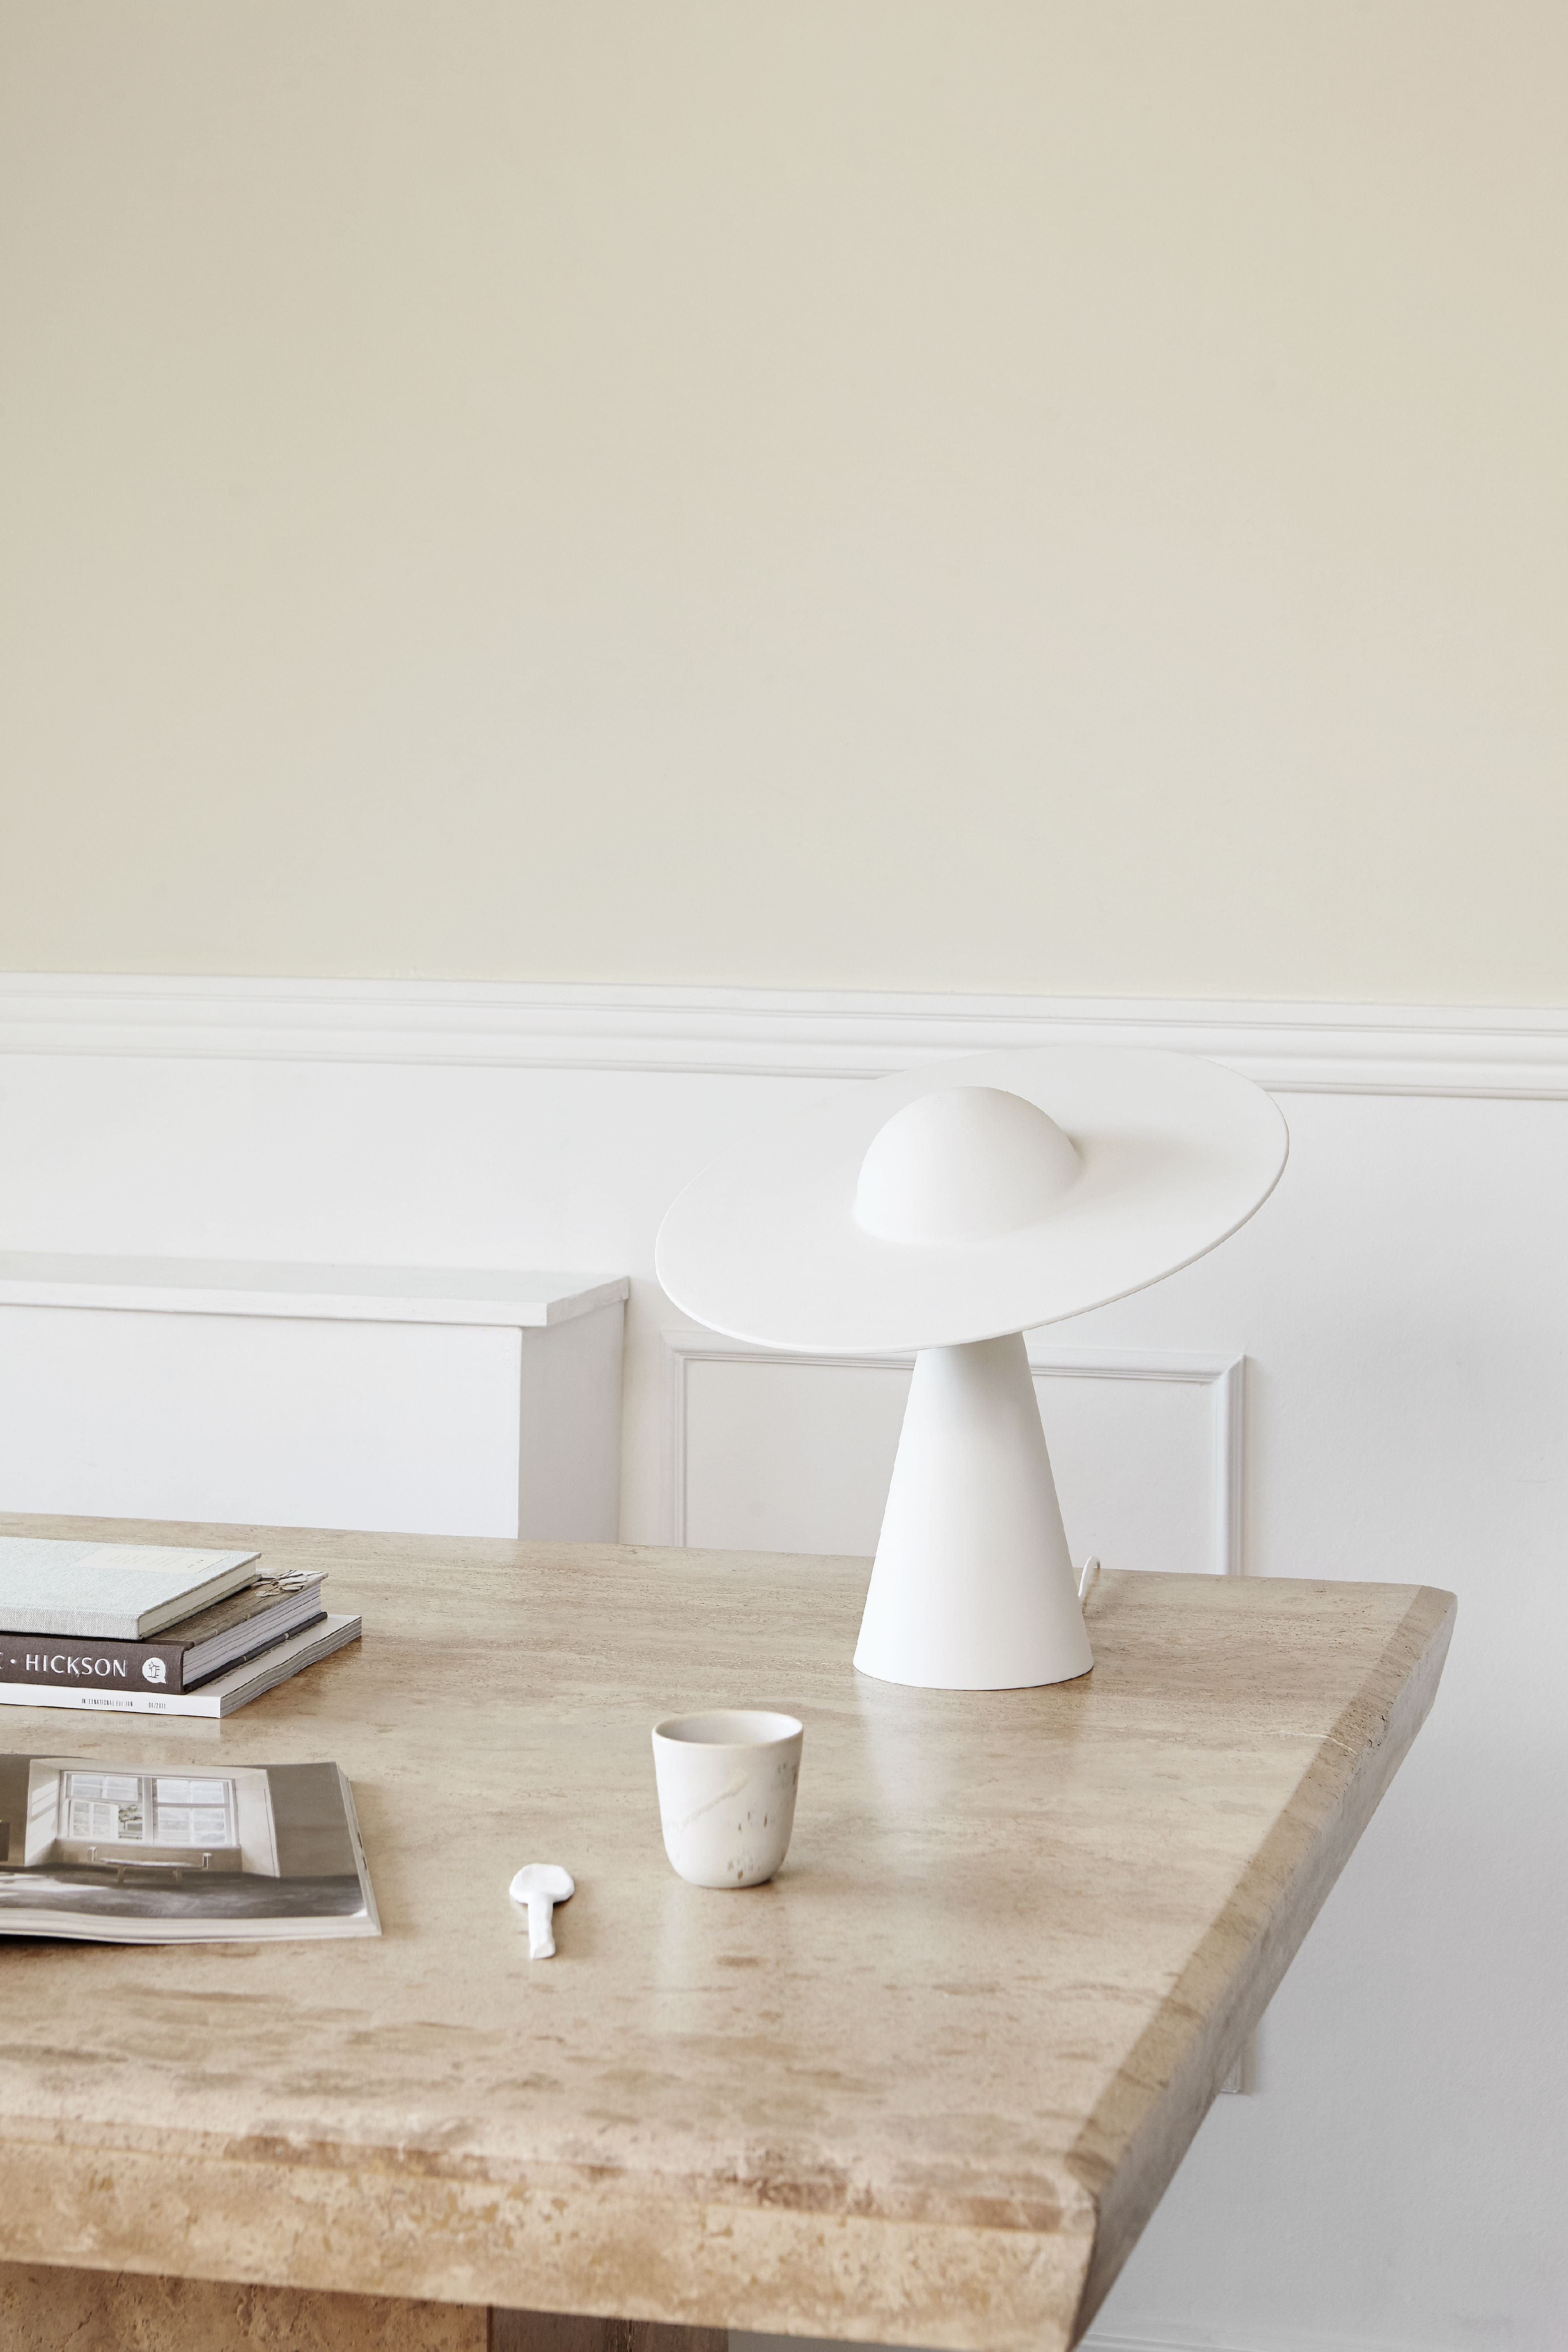 MOEBE Lampe de table en céramique, blanc